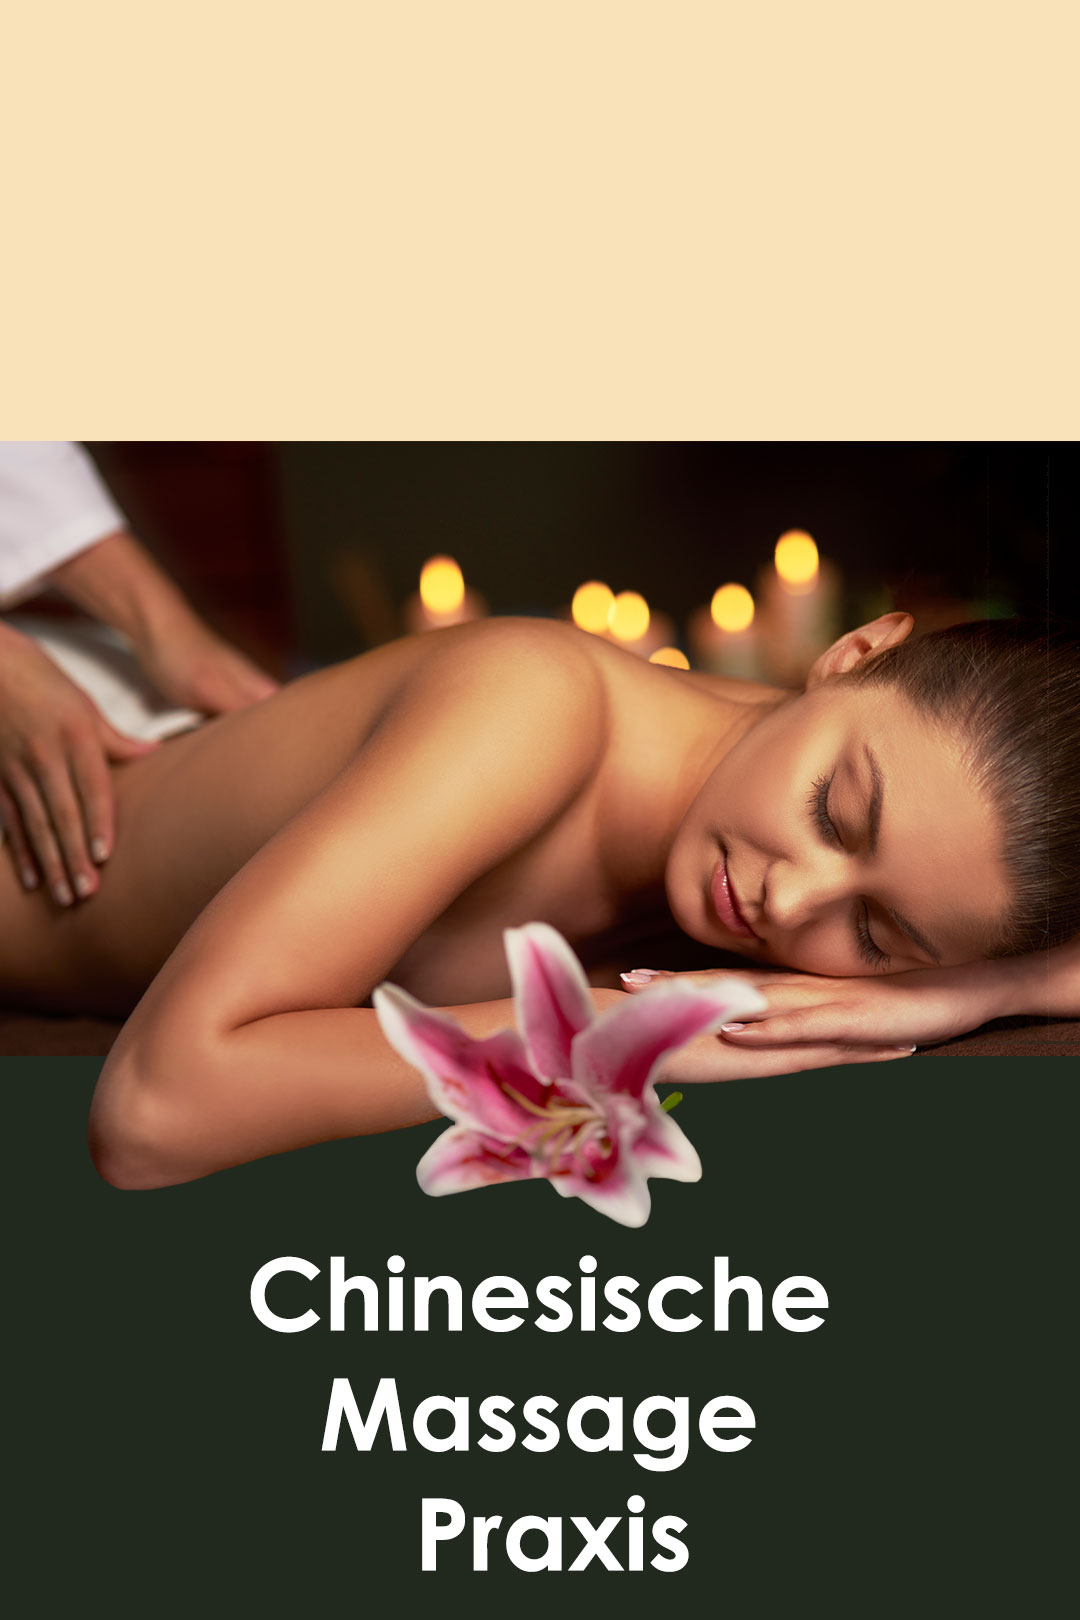 Chinesische massage hilden